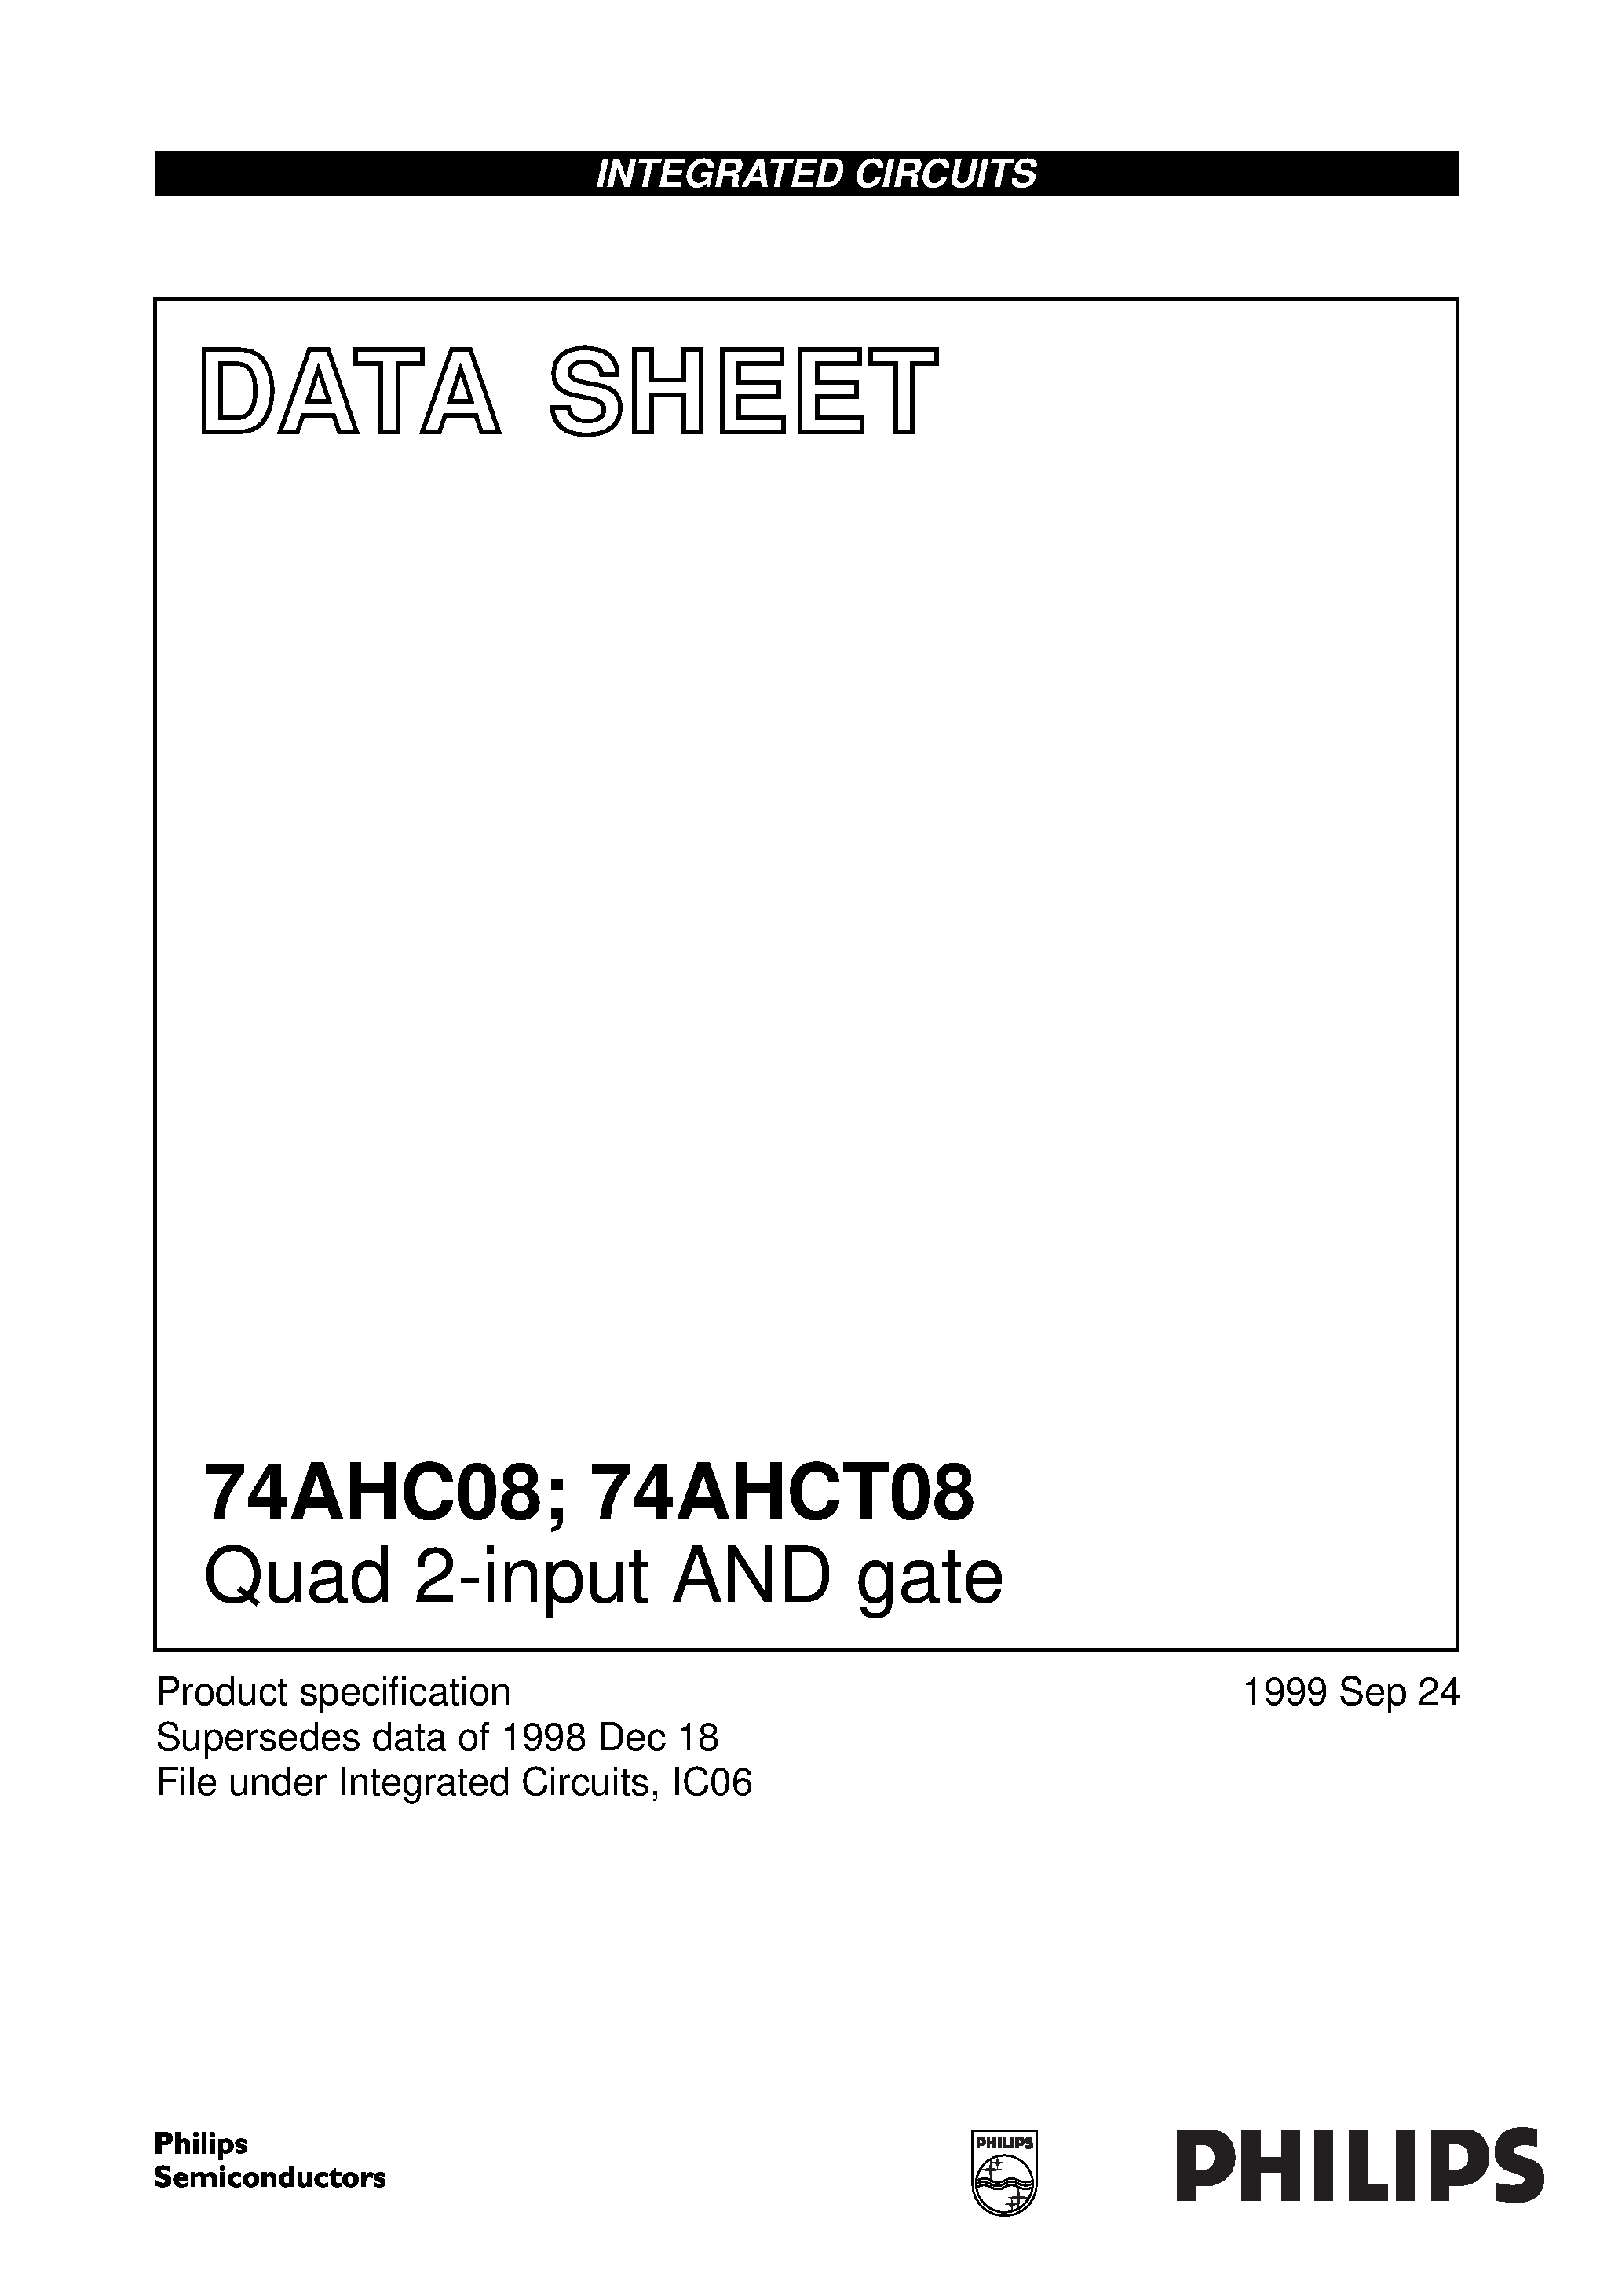 Даташит 74AHC08 - Quad 2-input AND gate страница 1